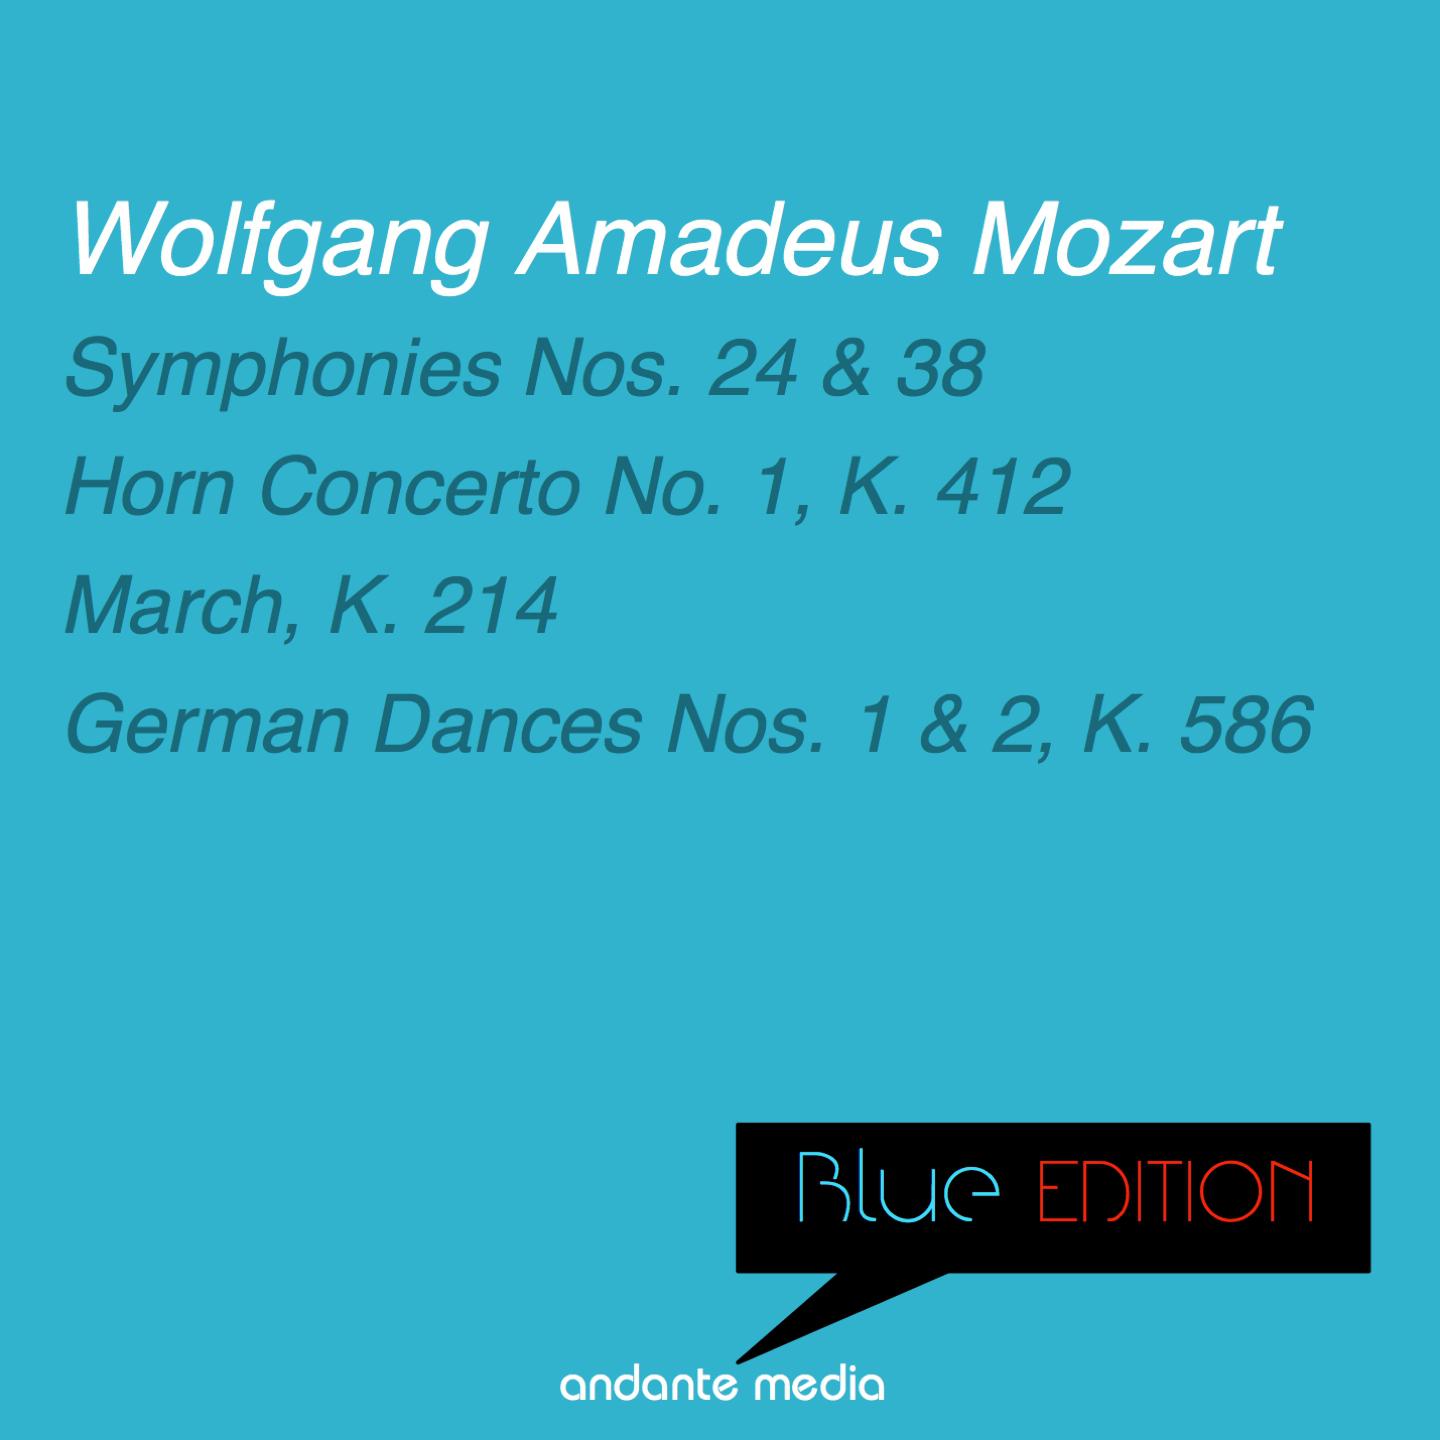 Blue Edition - Mozart: Symphonies Nos. 24, 38 & Horn Concerto No. 1, K. 412